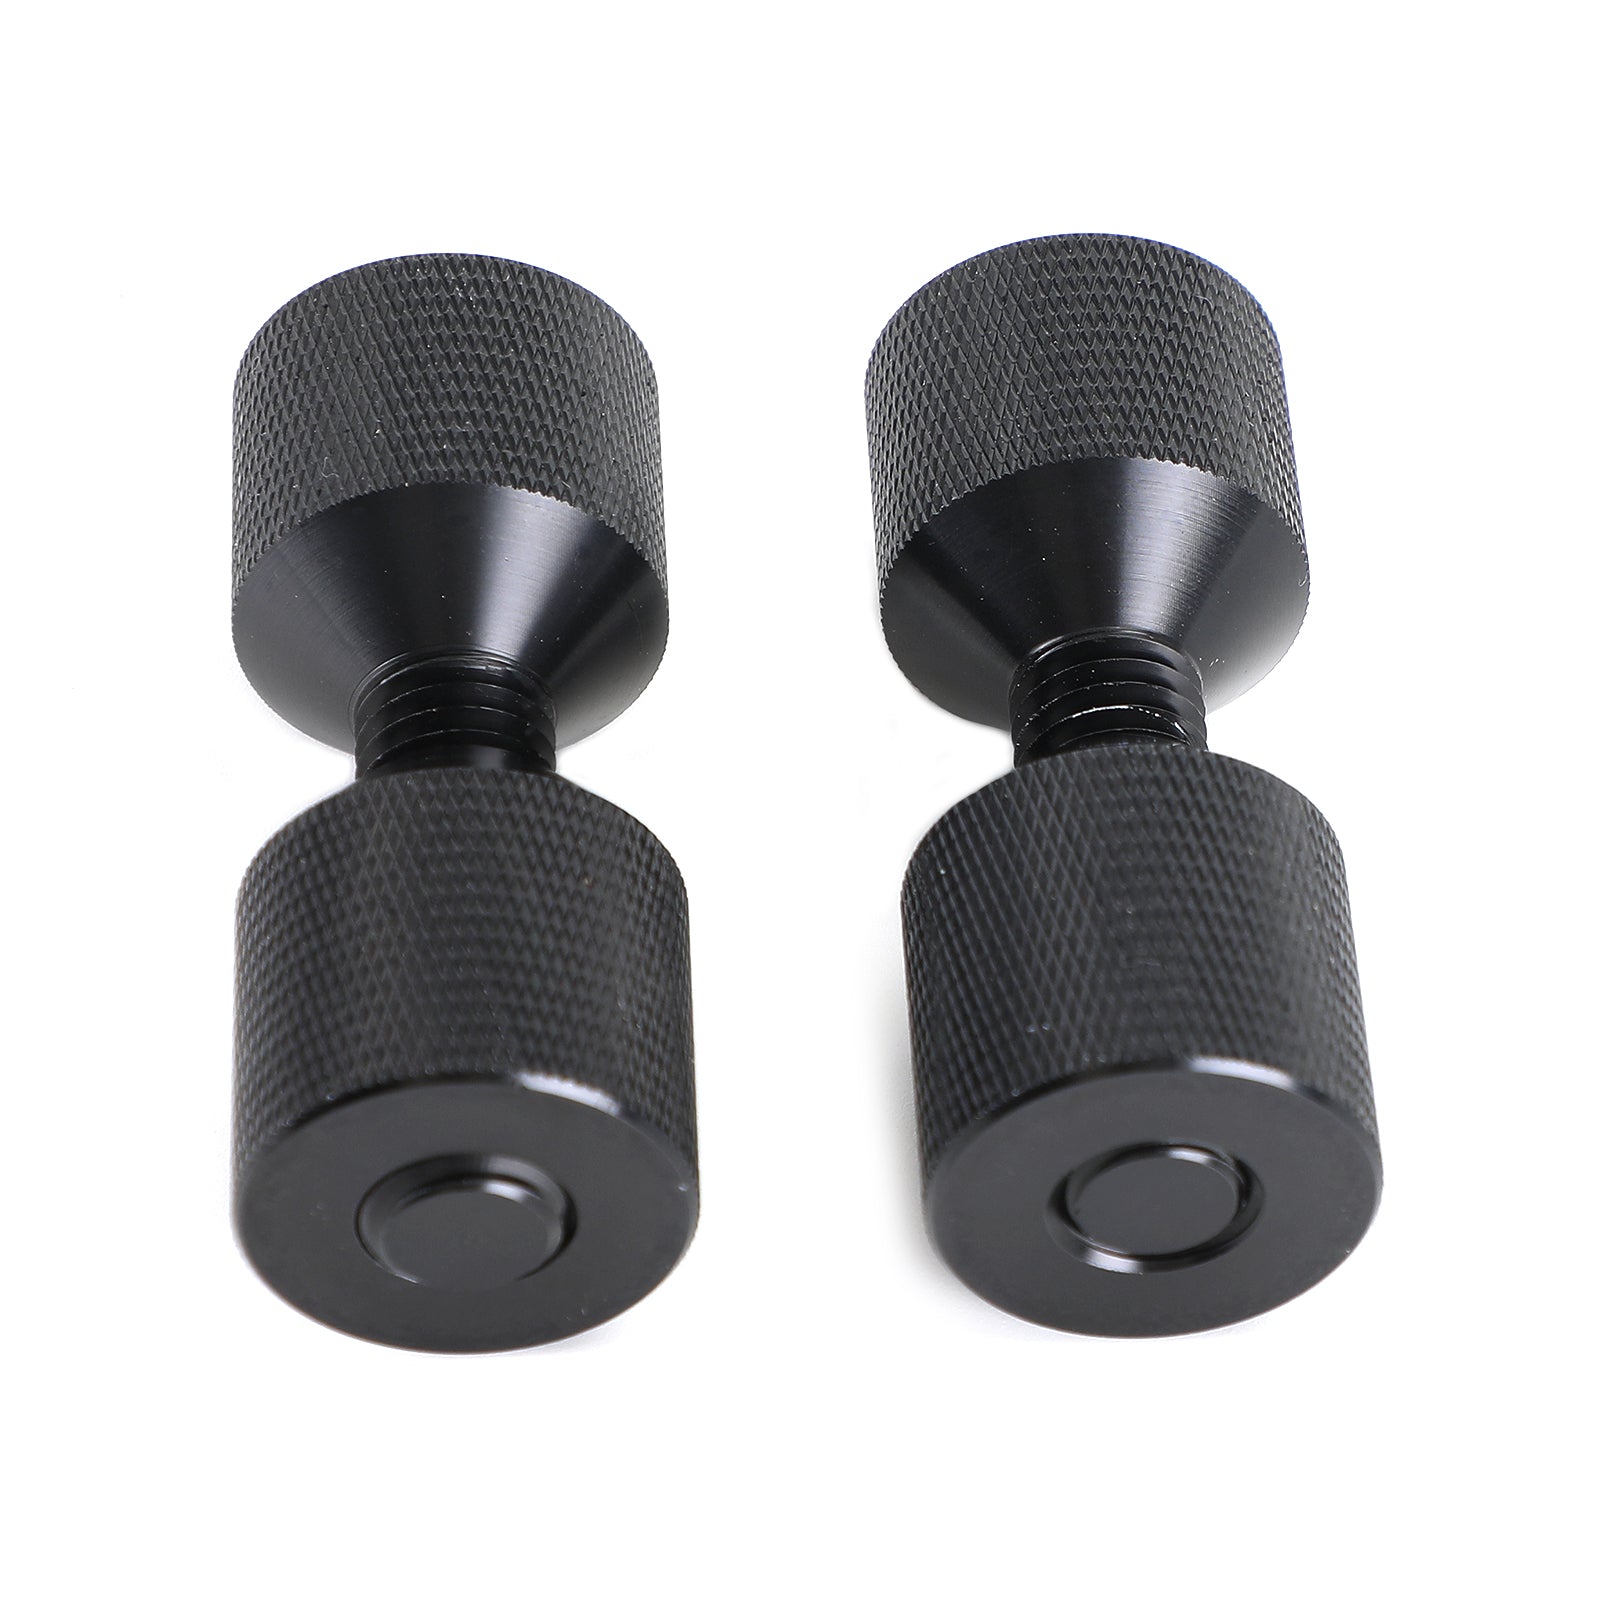 Pasadores pequeños de dos orificios de aluminio moleteado de 1-1/8" con roscas removibles, negro